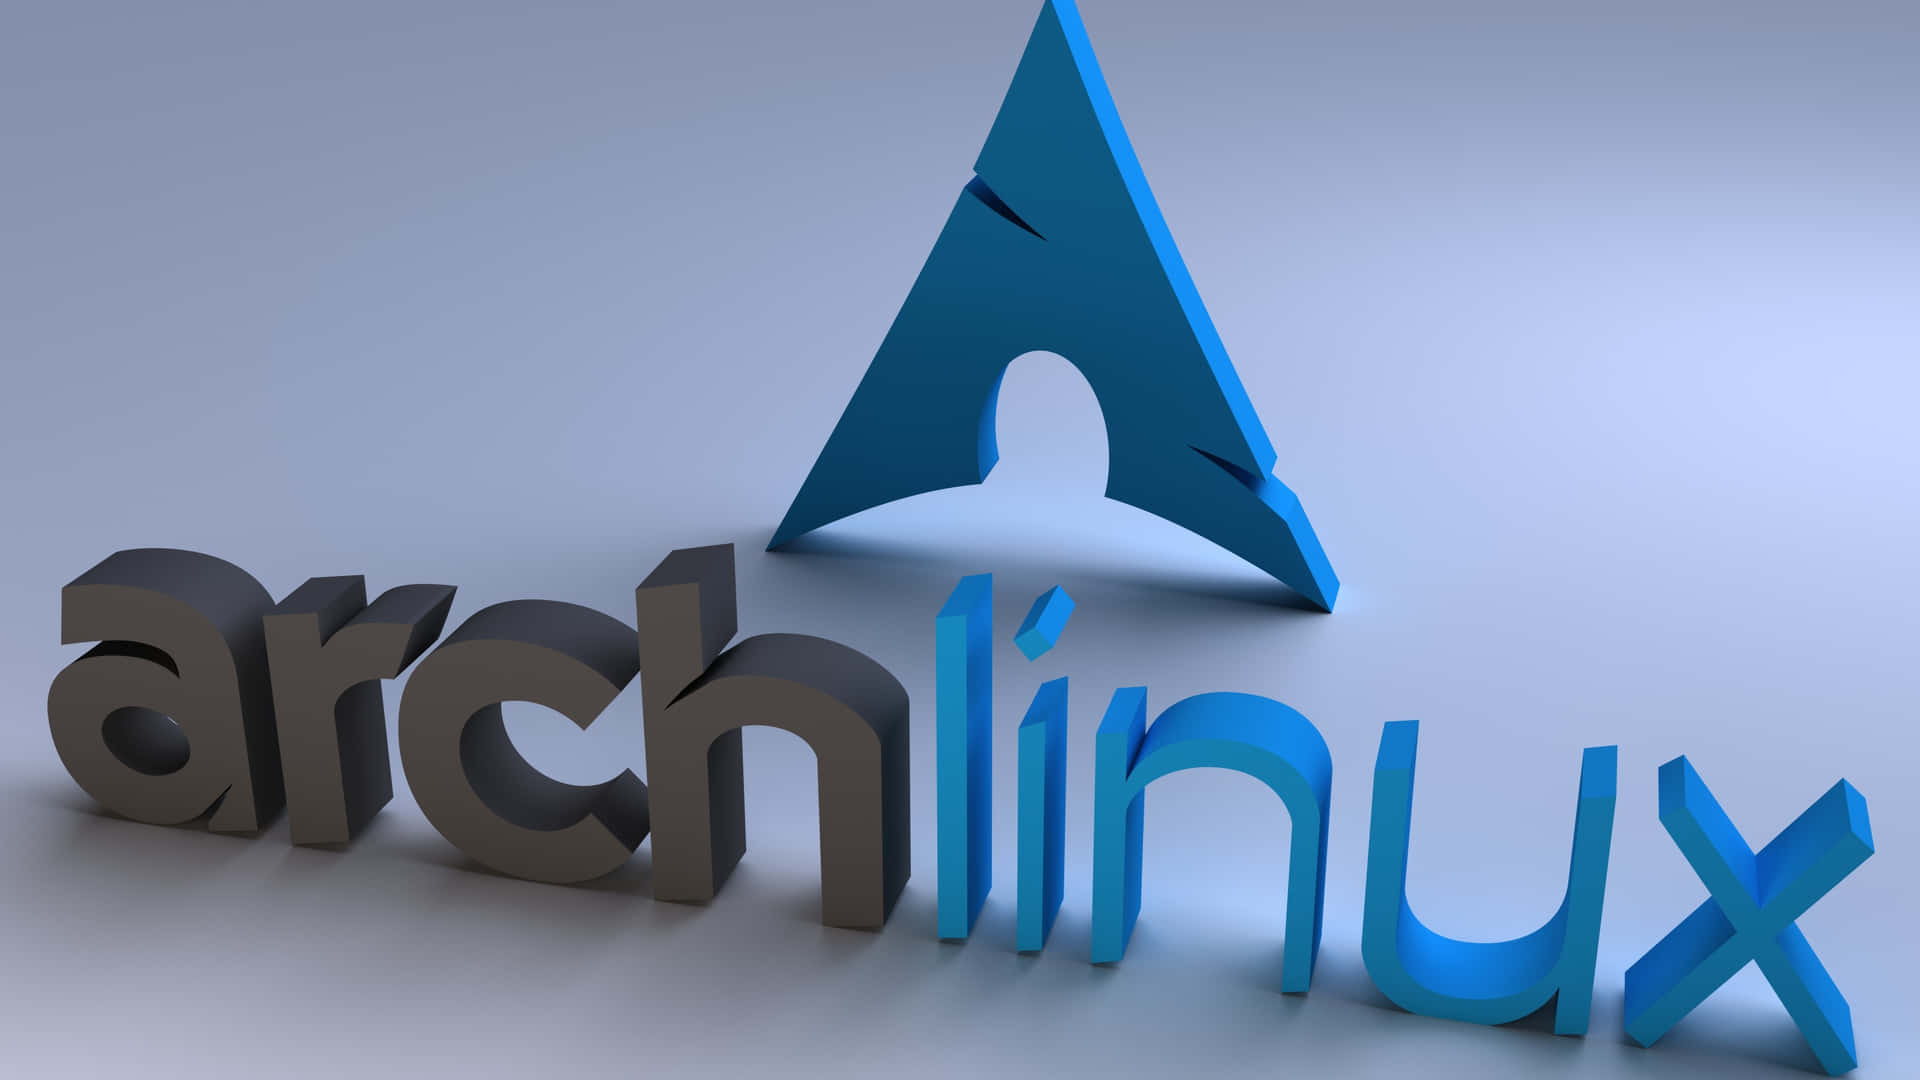 Fondode Pantalla De Arch Linux: Una Experiencia De Computación Minimalista. Fondo de pantalla